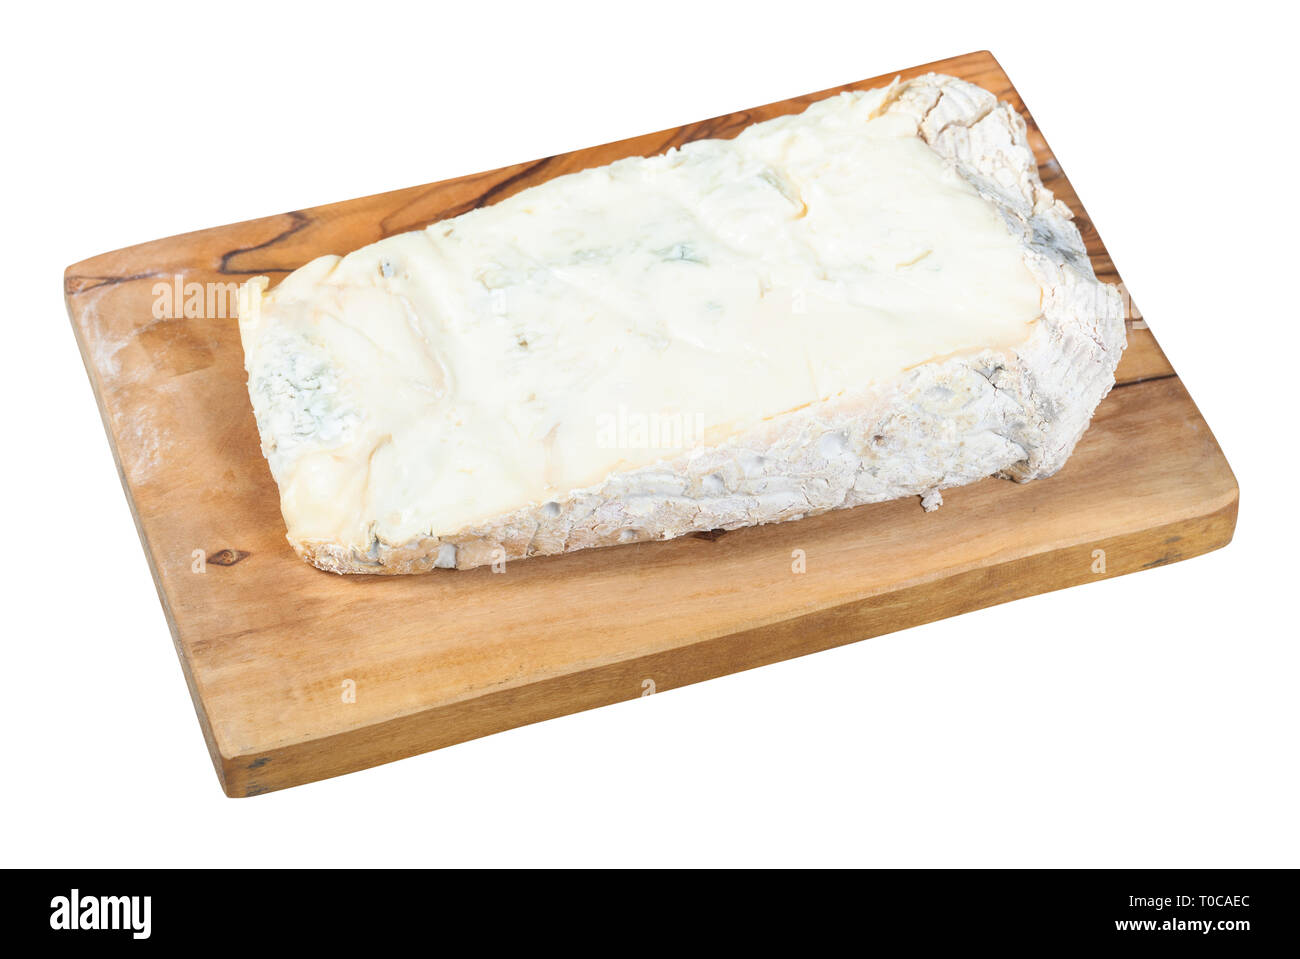 Trozo de Gorgonzola italiano local de queso azul suave sobre la placa de corte en madera de olivo aislado sobre fondo blanco. Foto de stock